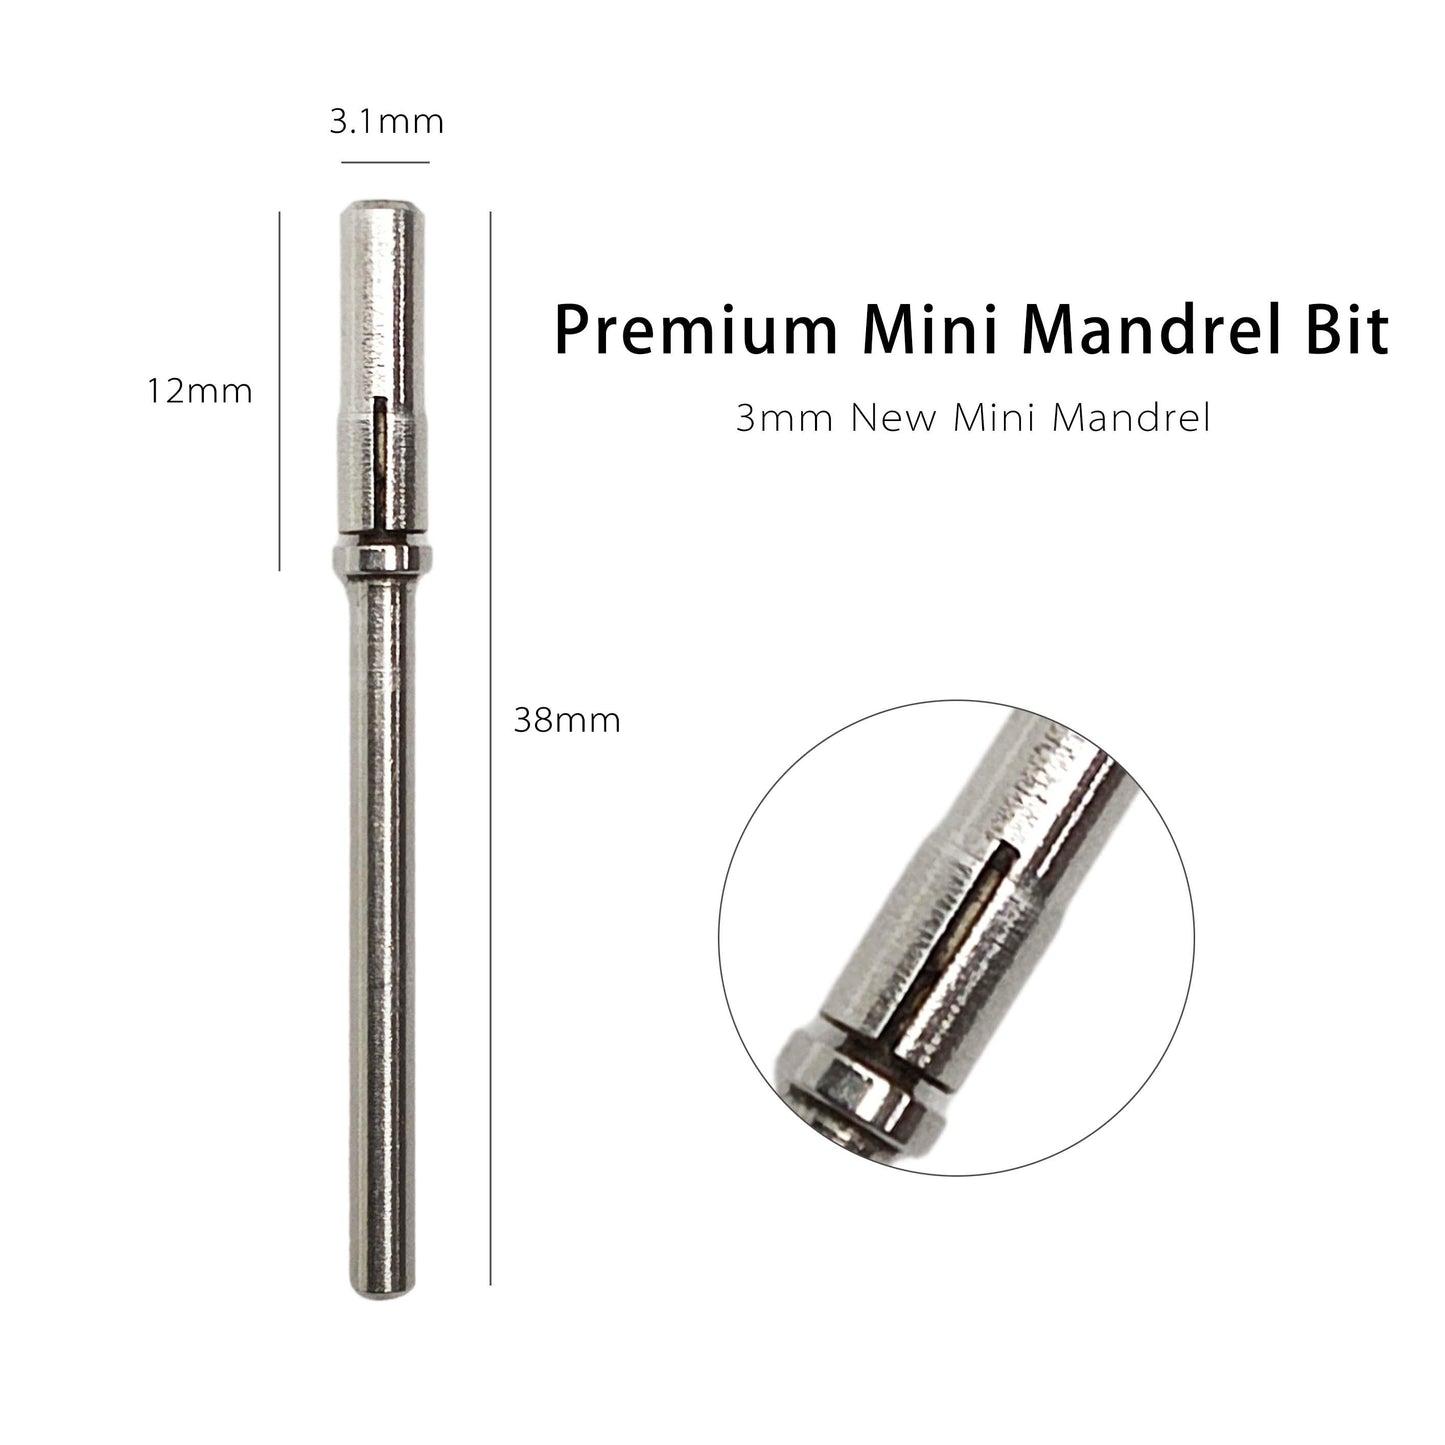 Premium Mini Mandrel Bit